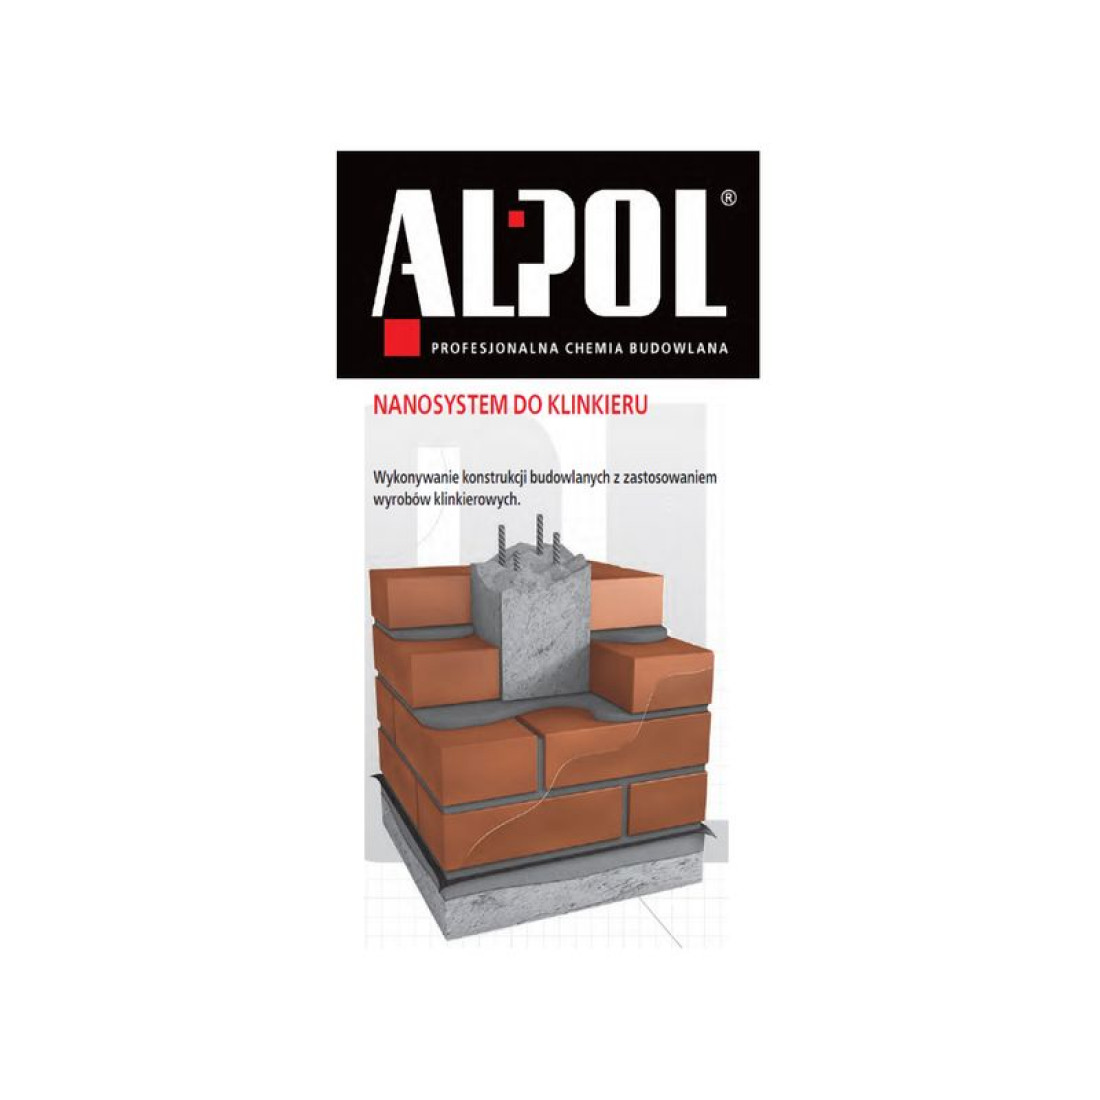 Wykonywanie murów z klinkieru bez wykwitów z produktami marki ALPOL